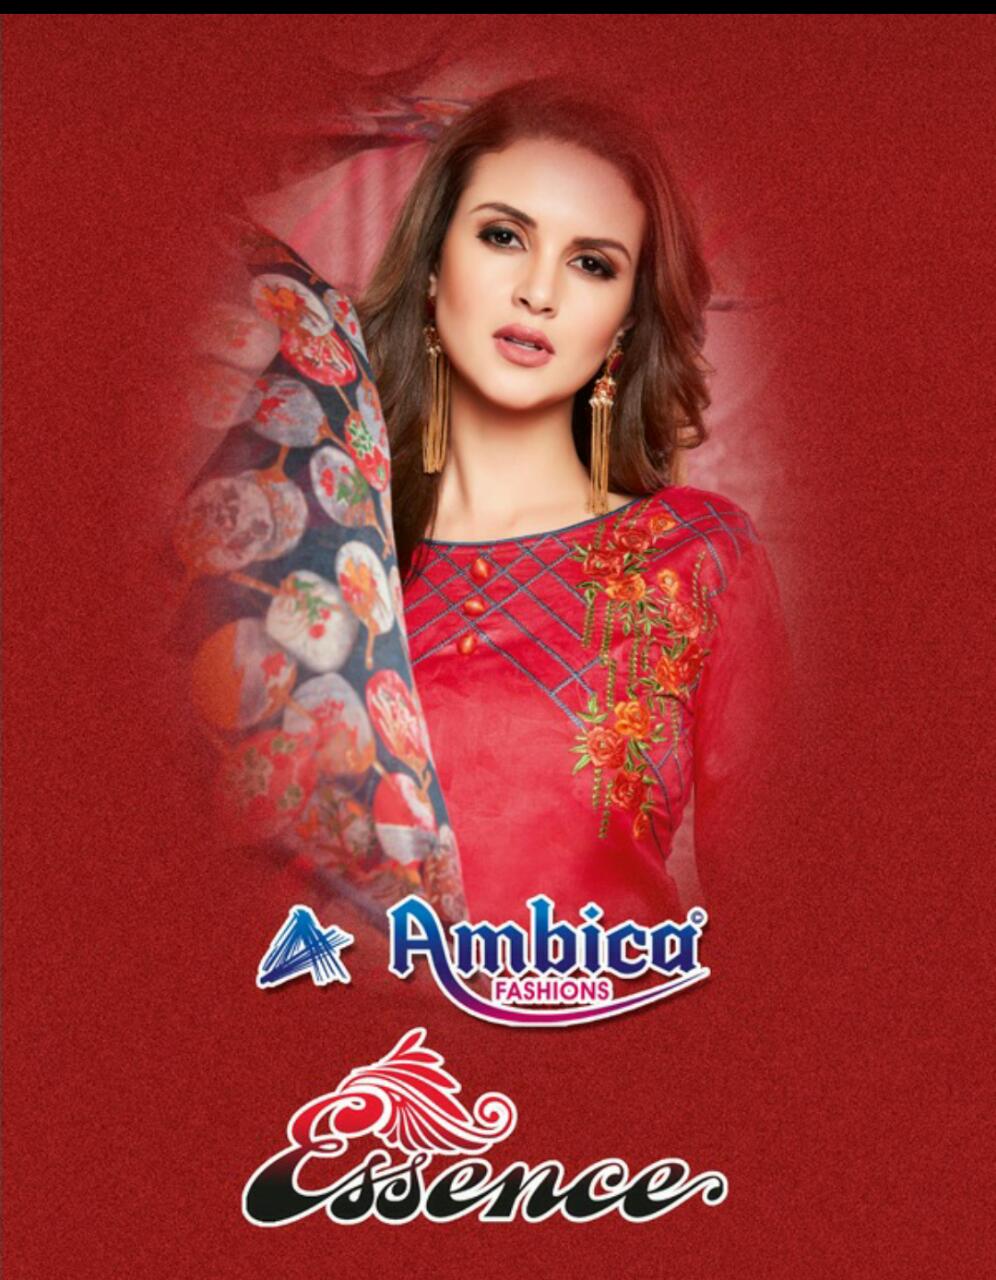 Ambica fashion essence cotton salwar kameez catalog wholesale supplier surat